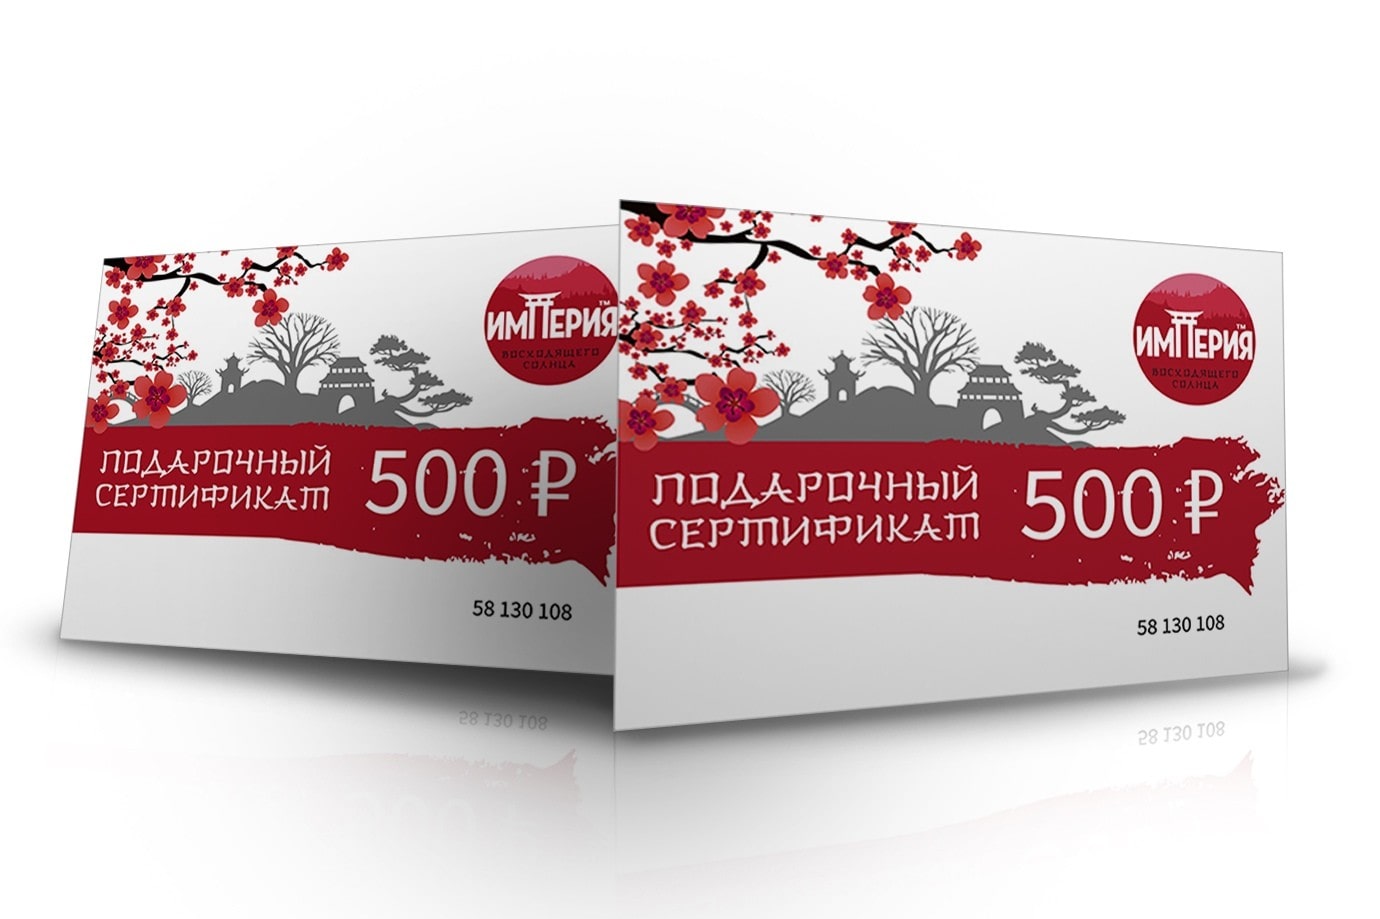 Заказать Сертификат на 500 р. с доставкой на дом в Новосибирске, Империя суши